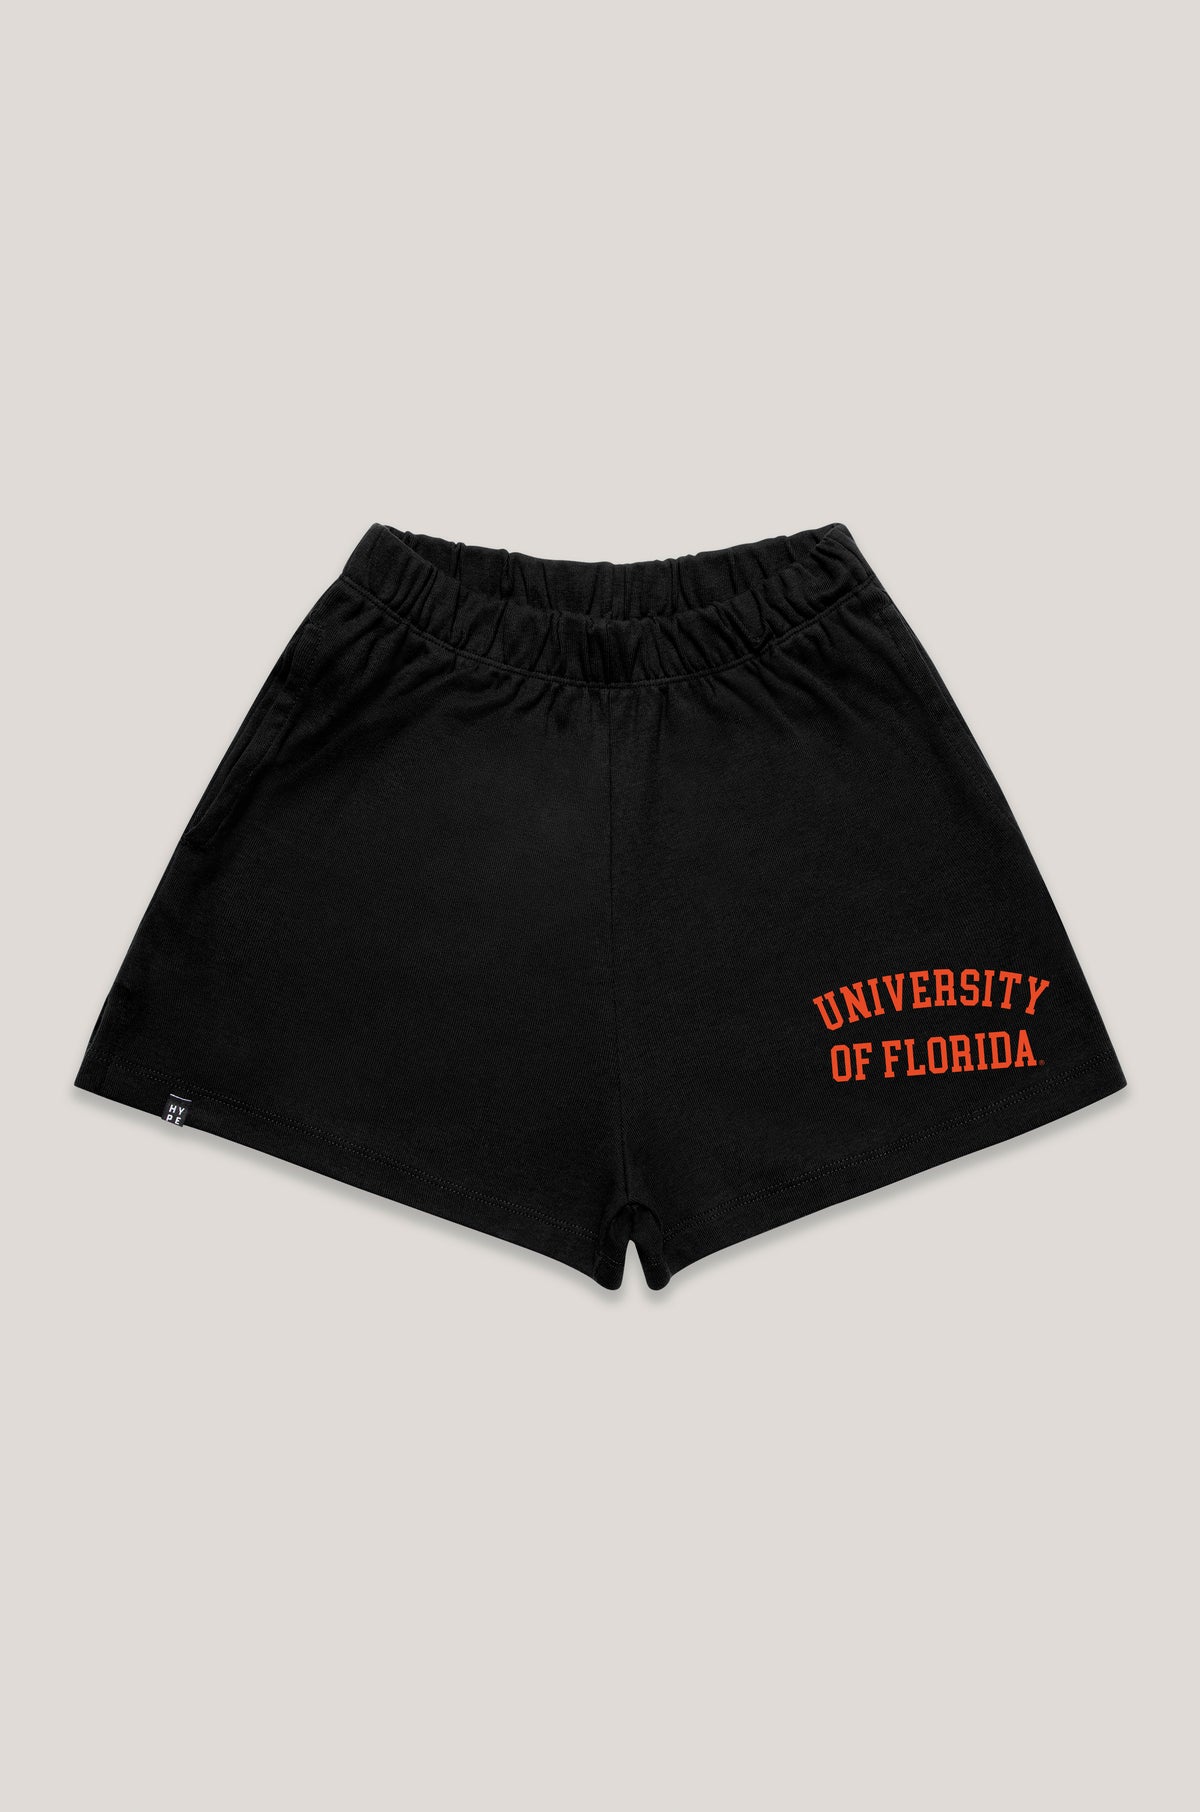 University of Florida Track Shorts